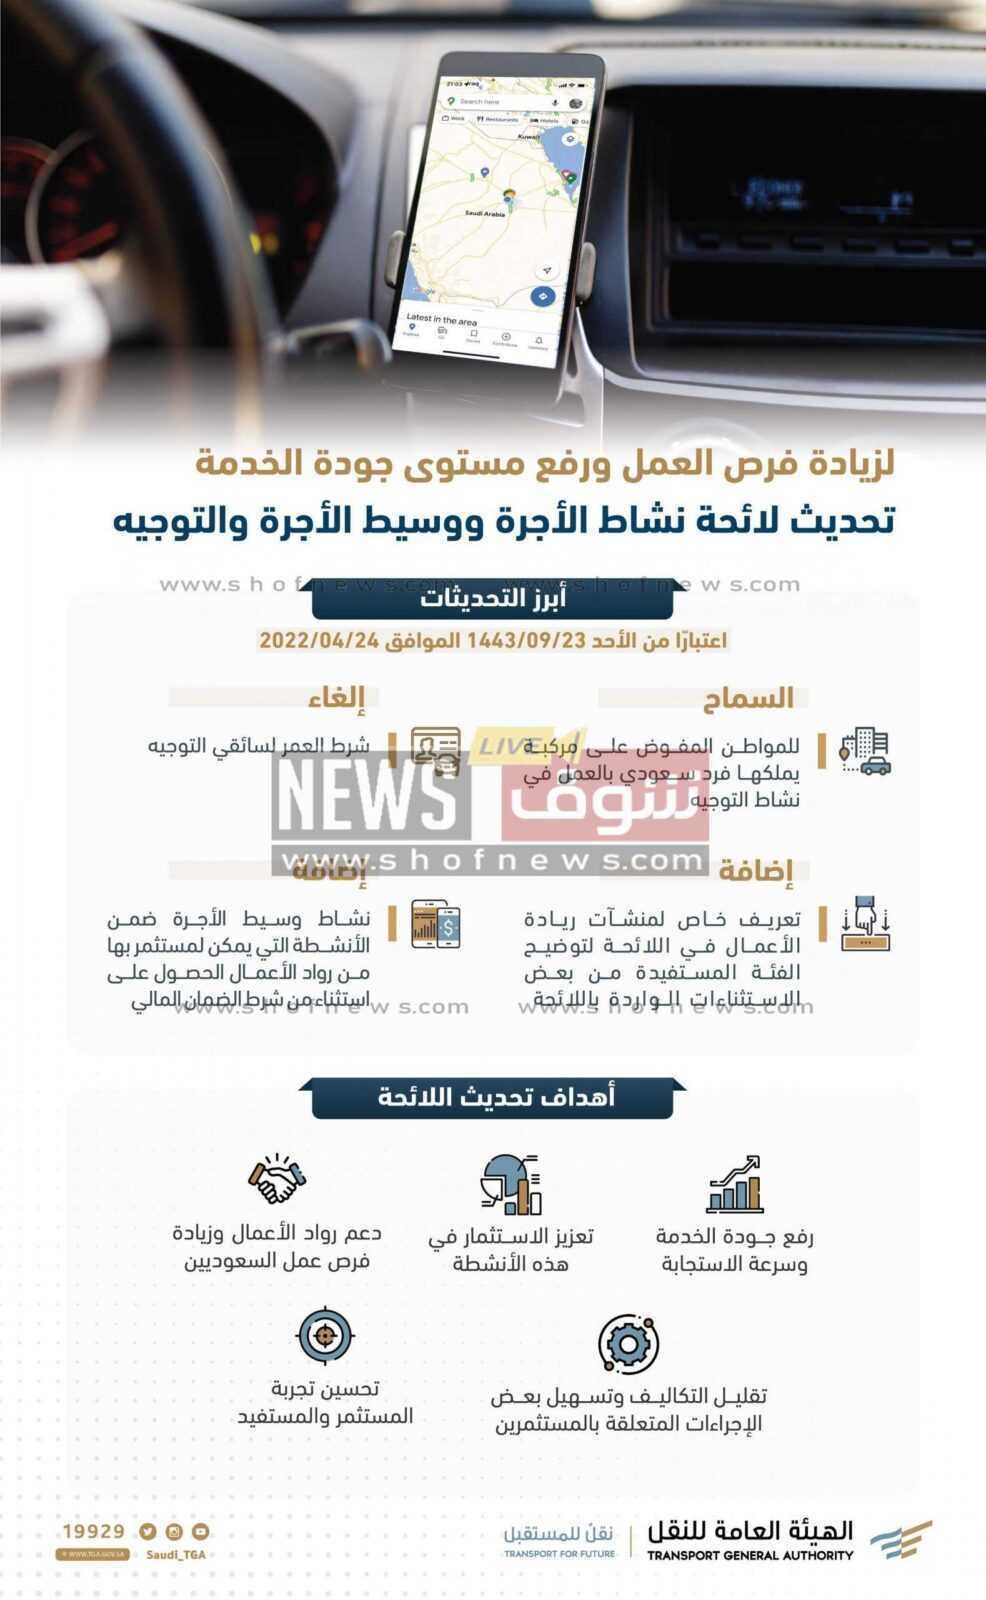 الهيئة العامة للنقل بالسعودية بدأ العمل في تطبيقات نقل الركاب وإلغاء شرط العمر للسائق 1444